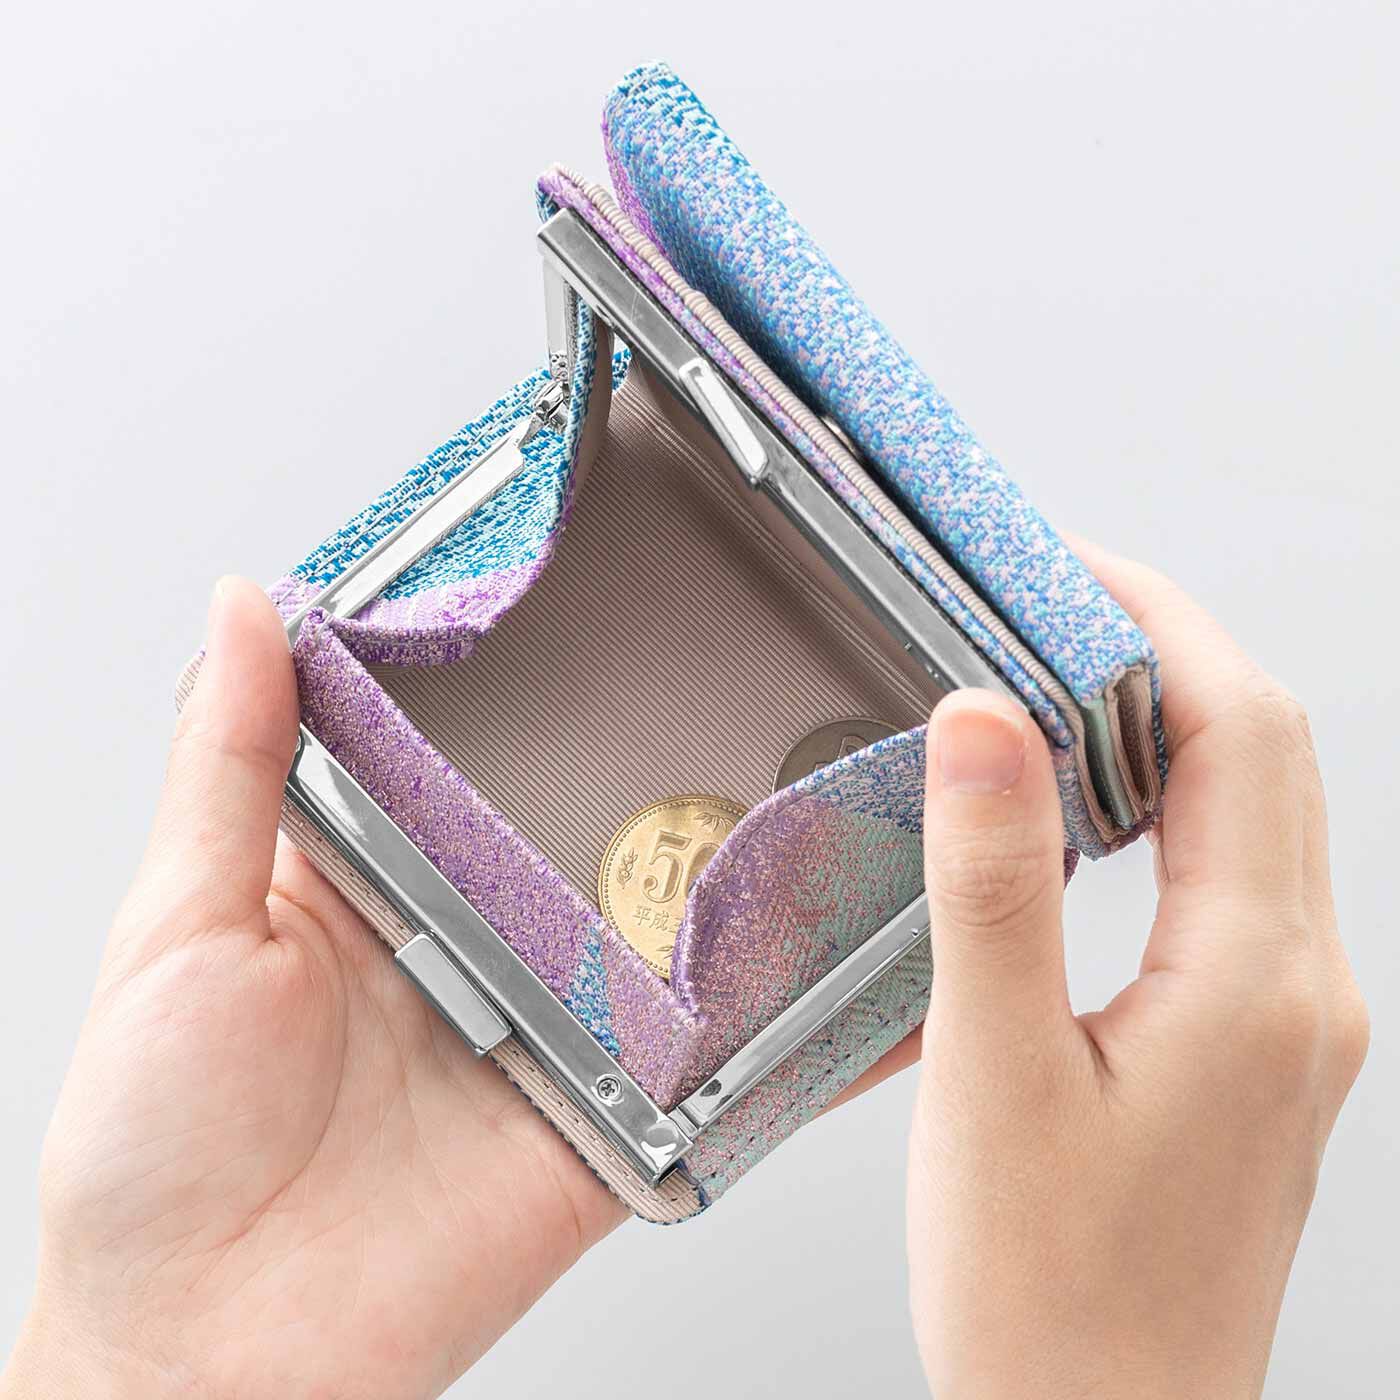 Real Stock|特別な西陣織の生地で作った 三つ折りがま口ミニ財布|がばっと開いて使いやすいがま口コインケース。